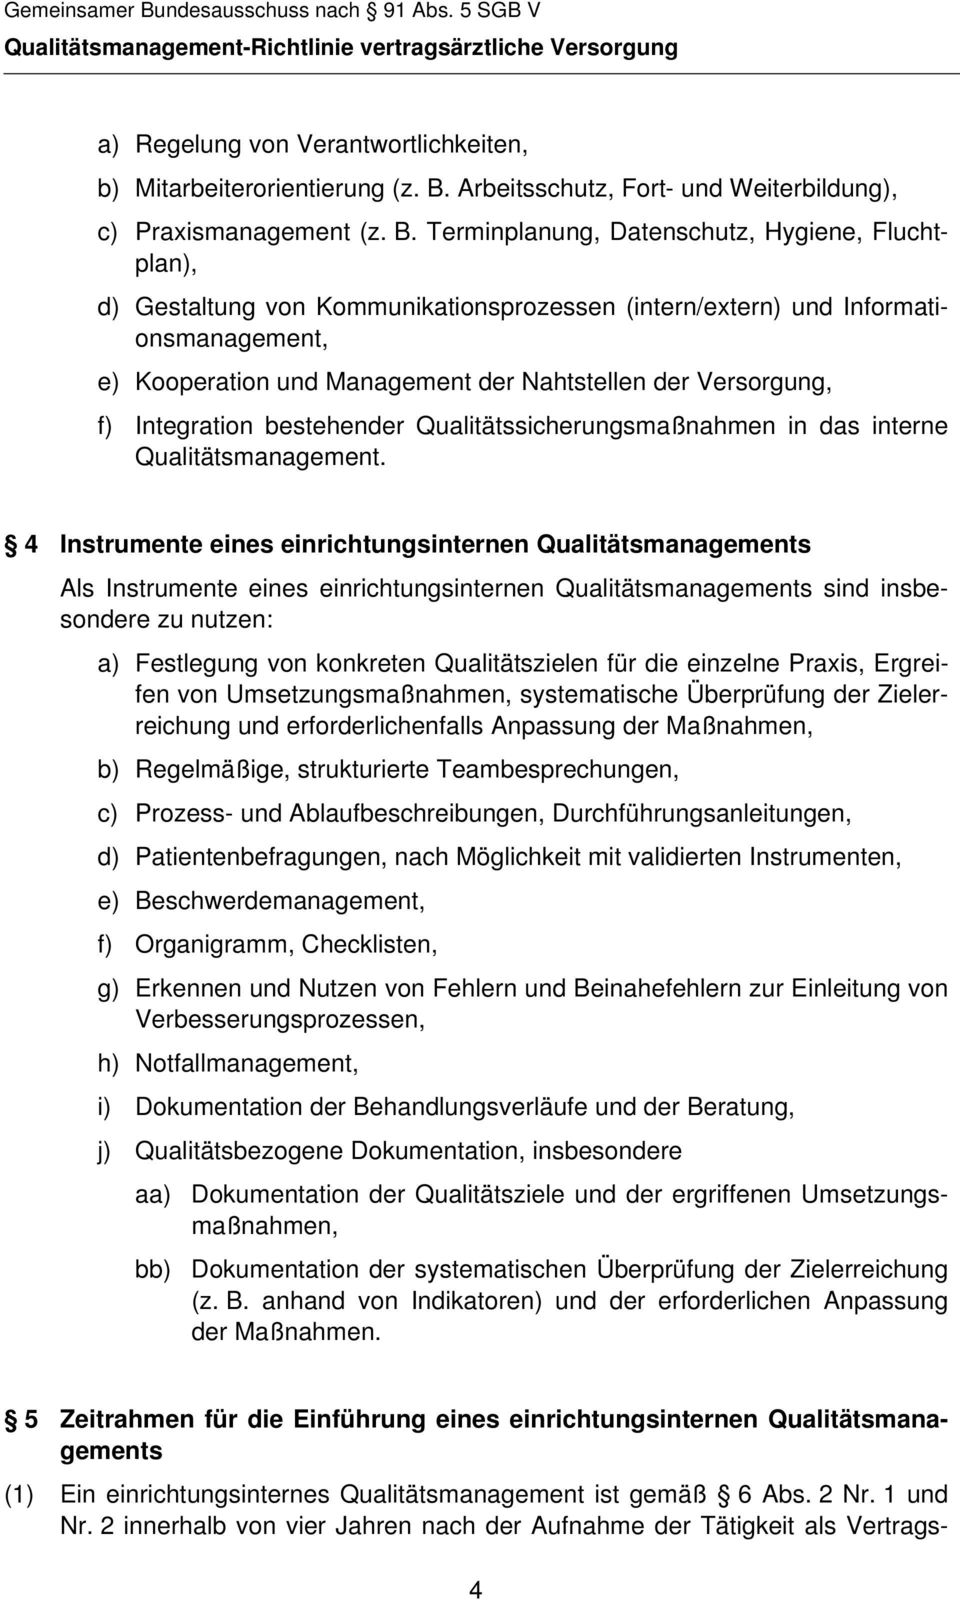 Arbeitsschutz, Fort- und Weiterbildung), c) Praxismanagement (z. B.